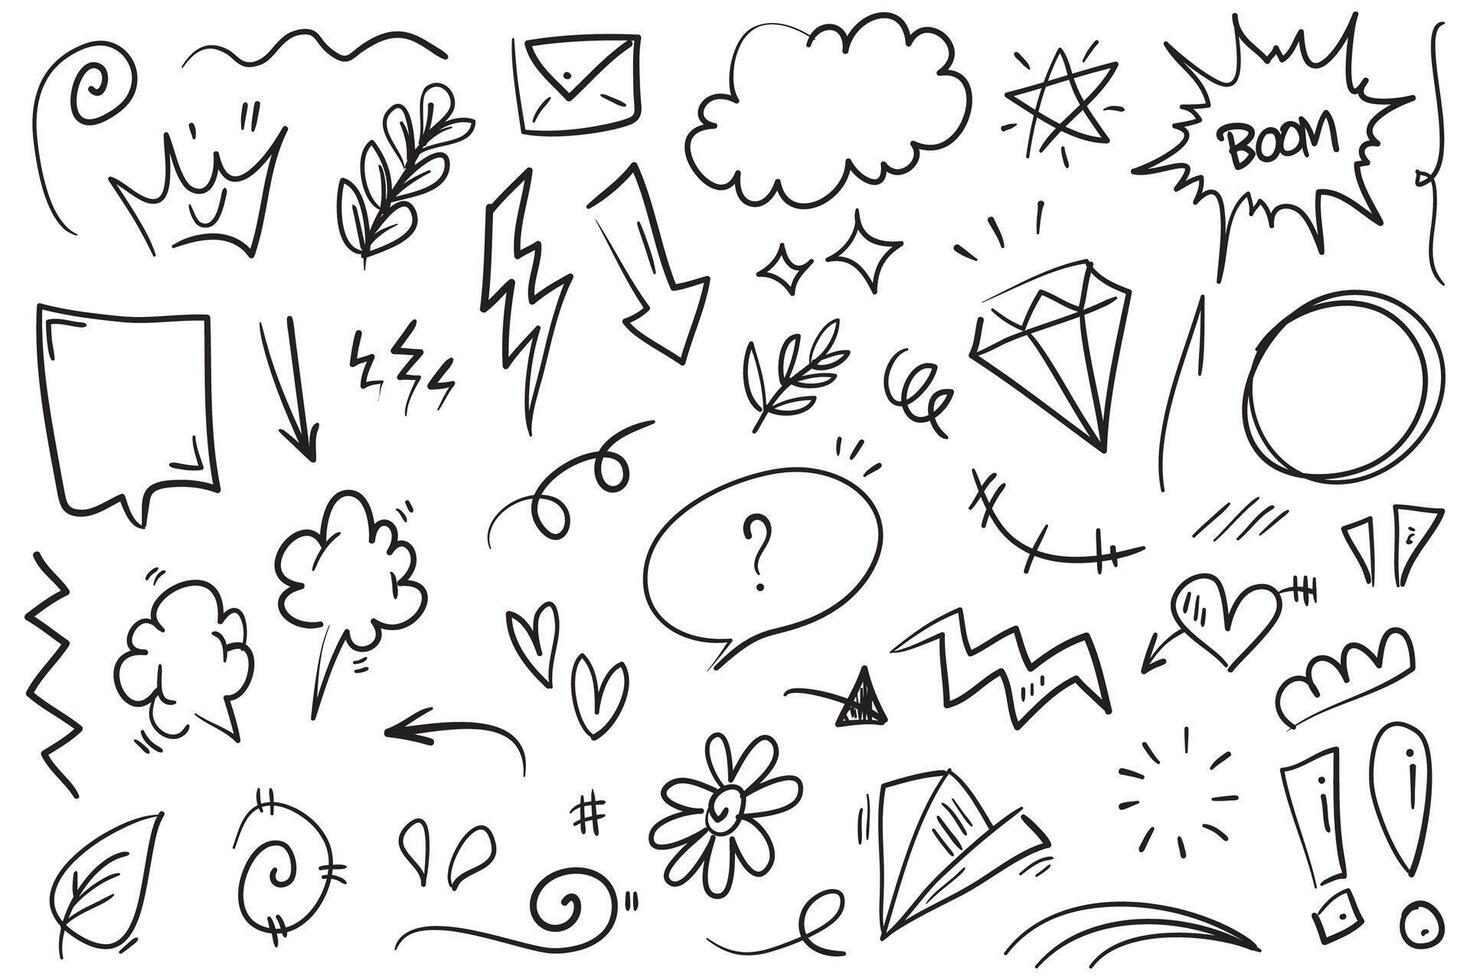 conjunto de vetores de doodle de sinal de expressão de desenho animado desenhado à mão, setas direcionais de curva, elementos de design de efeitos de emoticon, símbolos de emoção de personagem de desenho animado, linhas de traçado de pincel decorativas fofas.